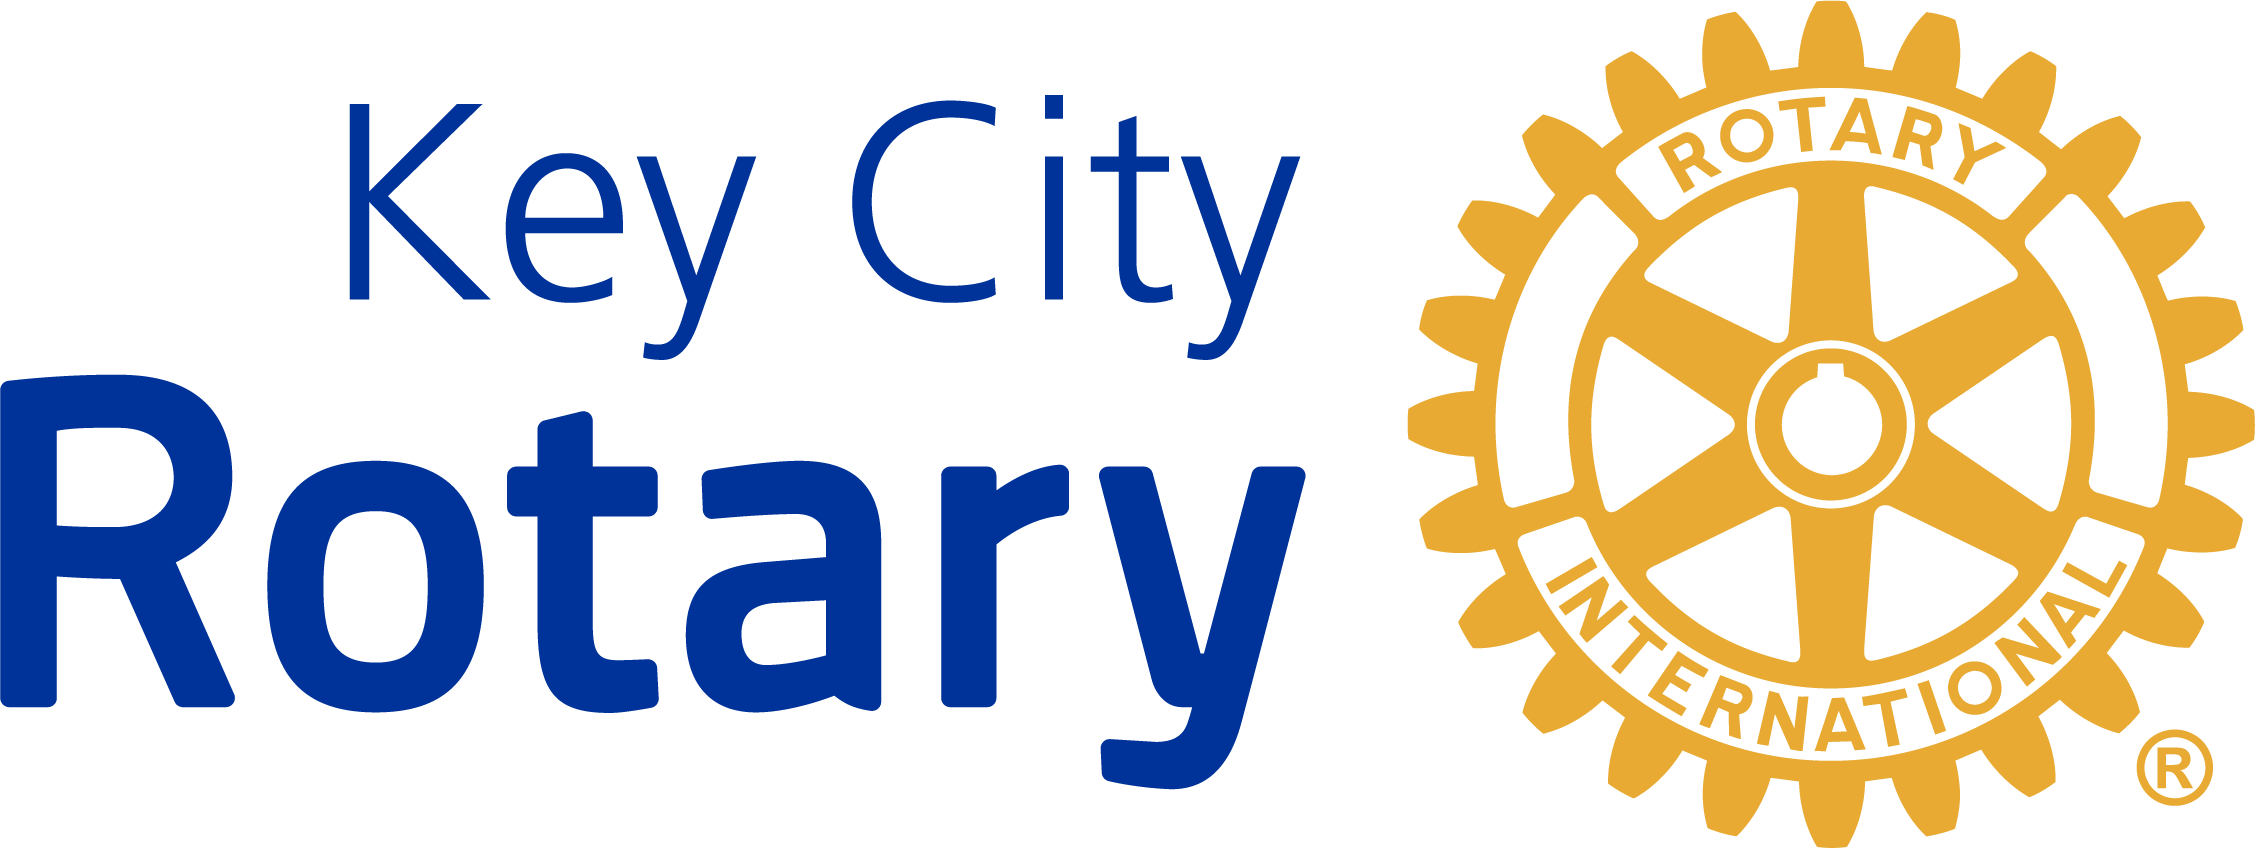 Key City Rotary